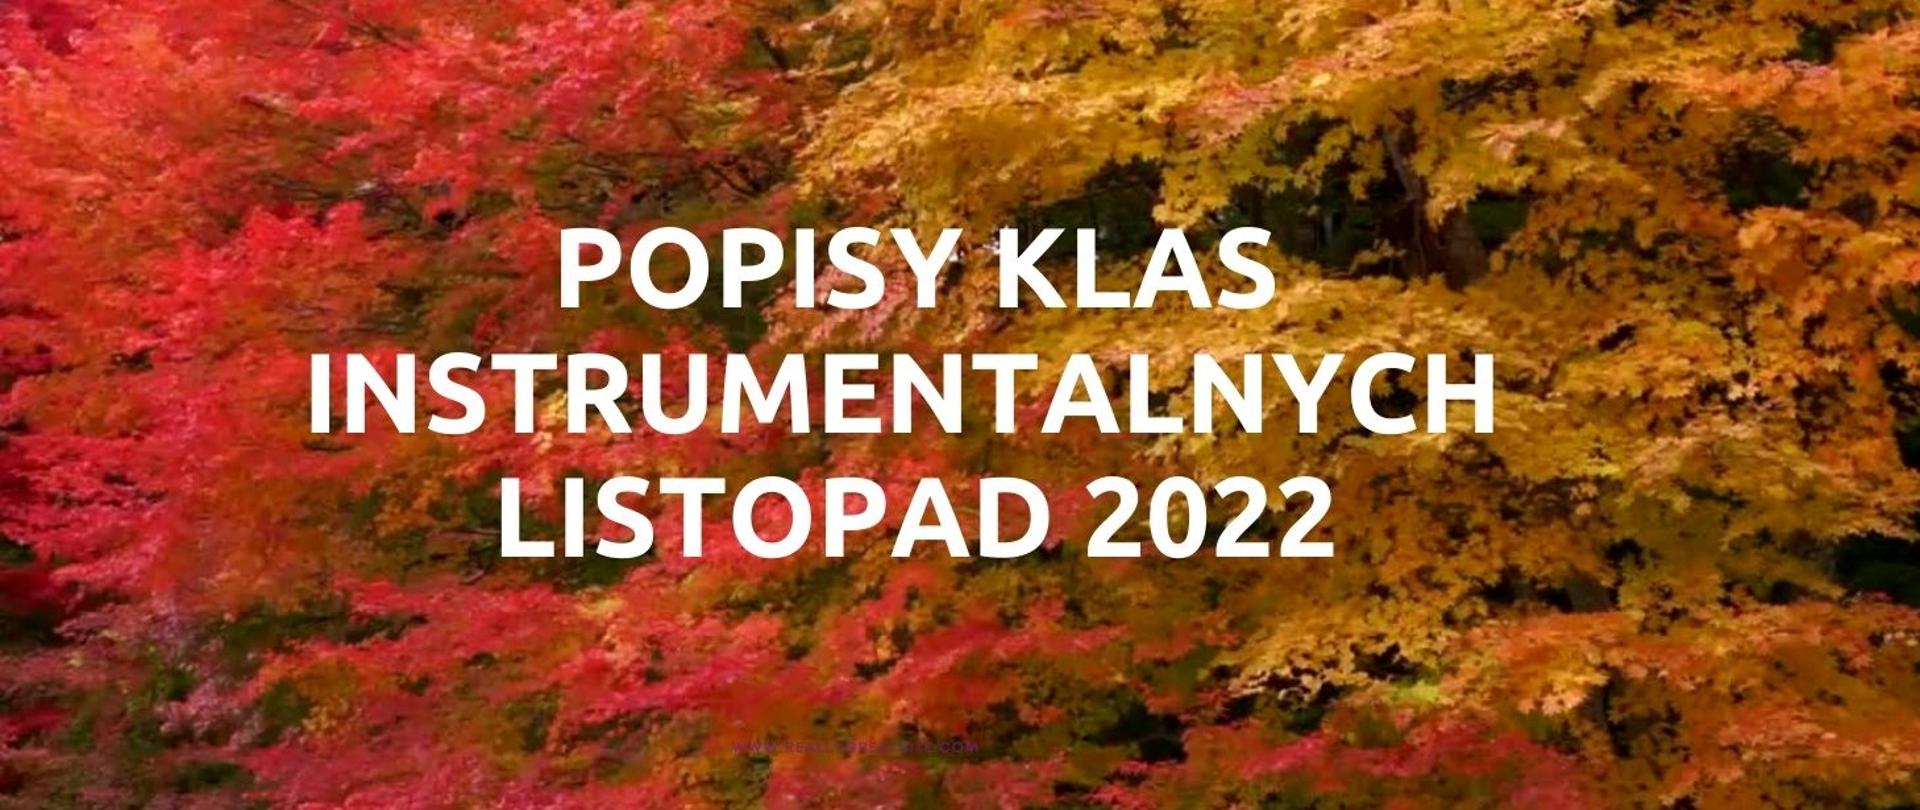 Grafika w kolorach jesiennych z napisem "Popisy klas instrumentalnych, listopad 2022".